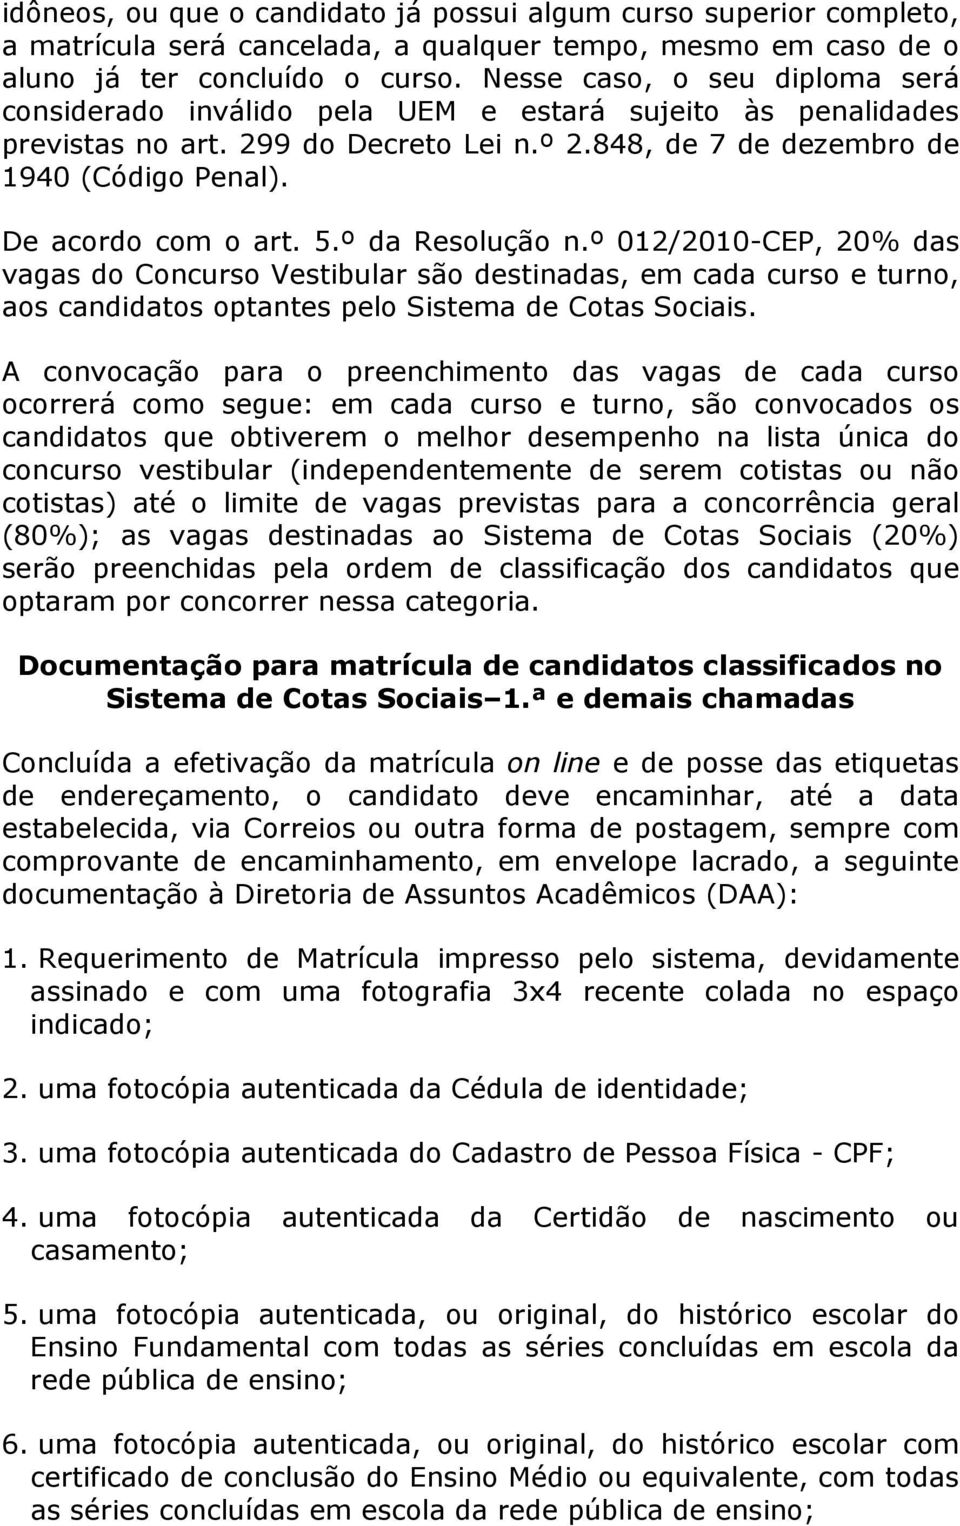 De acordo com o art. 5.º da Resolução n.º 012/2010-CEP, 20% das vagas do Concurso Vestibular são destinadas, em cada curso e turno, aos candidatos optantes pelo Sistema de Cotas Sociais.